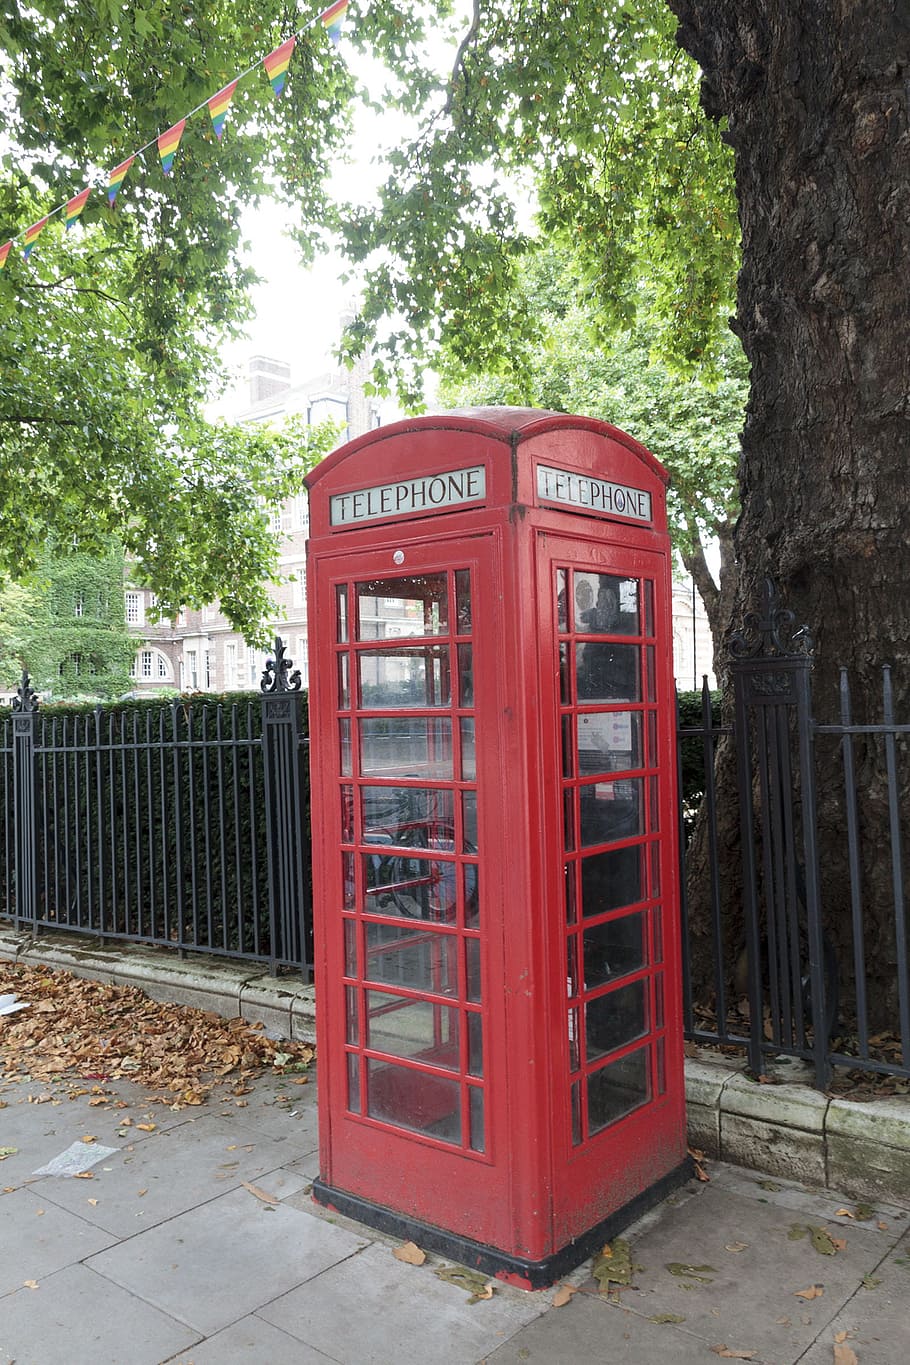 London Red Phone Box, united, britain, landmark, great, europe